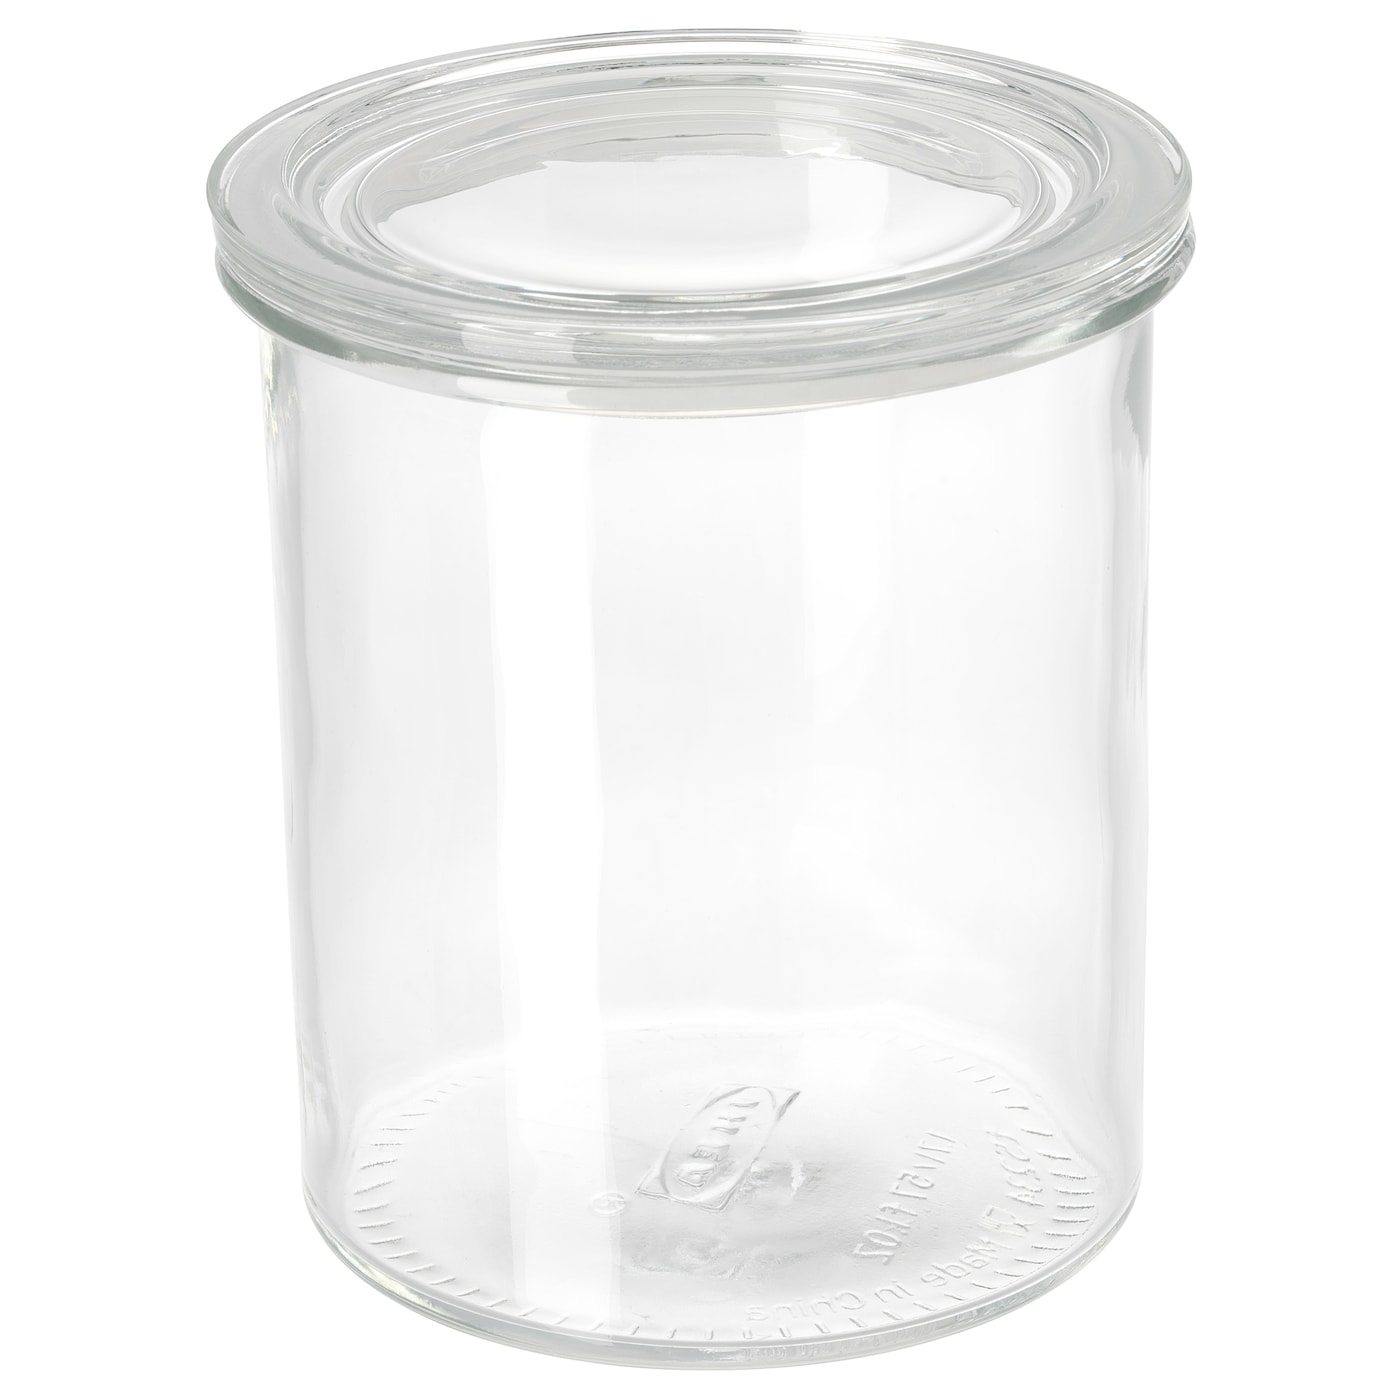 IKEA 365+ Glas mit Deckel – 1,7 l